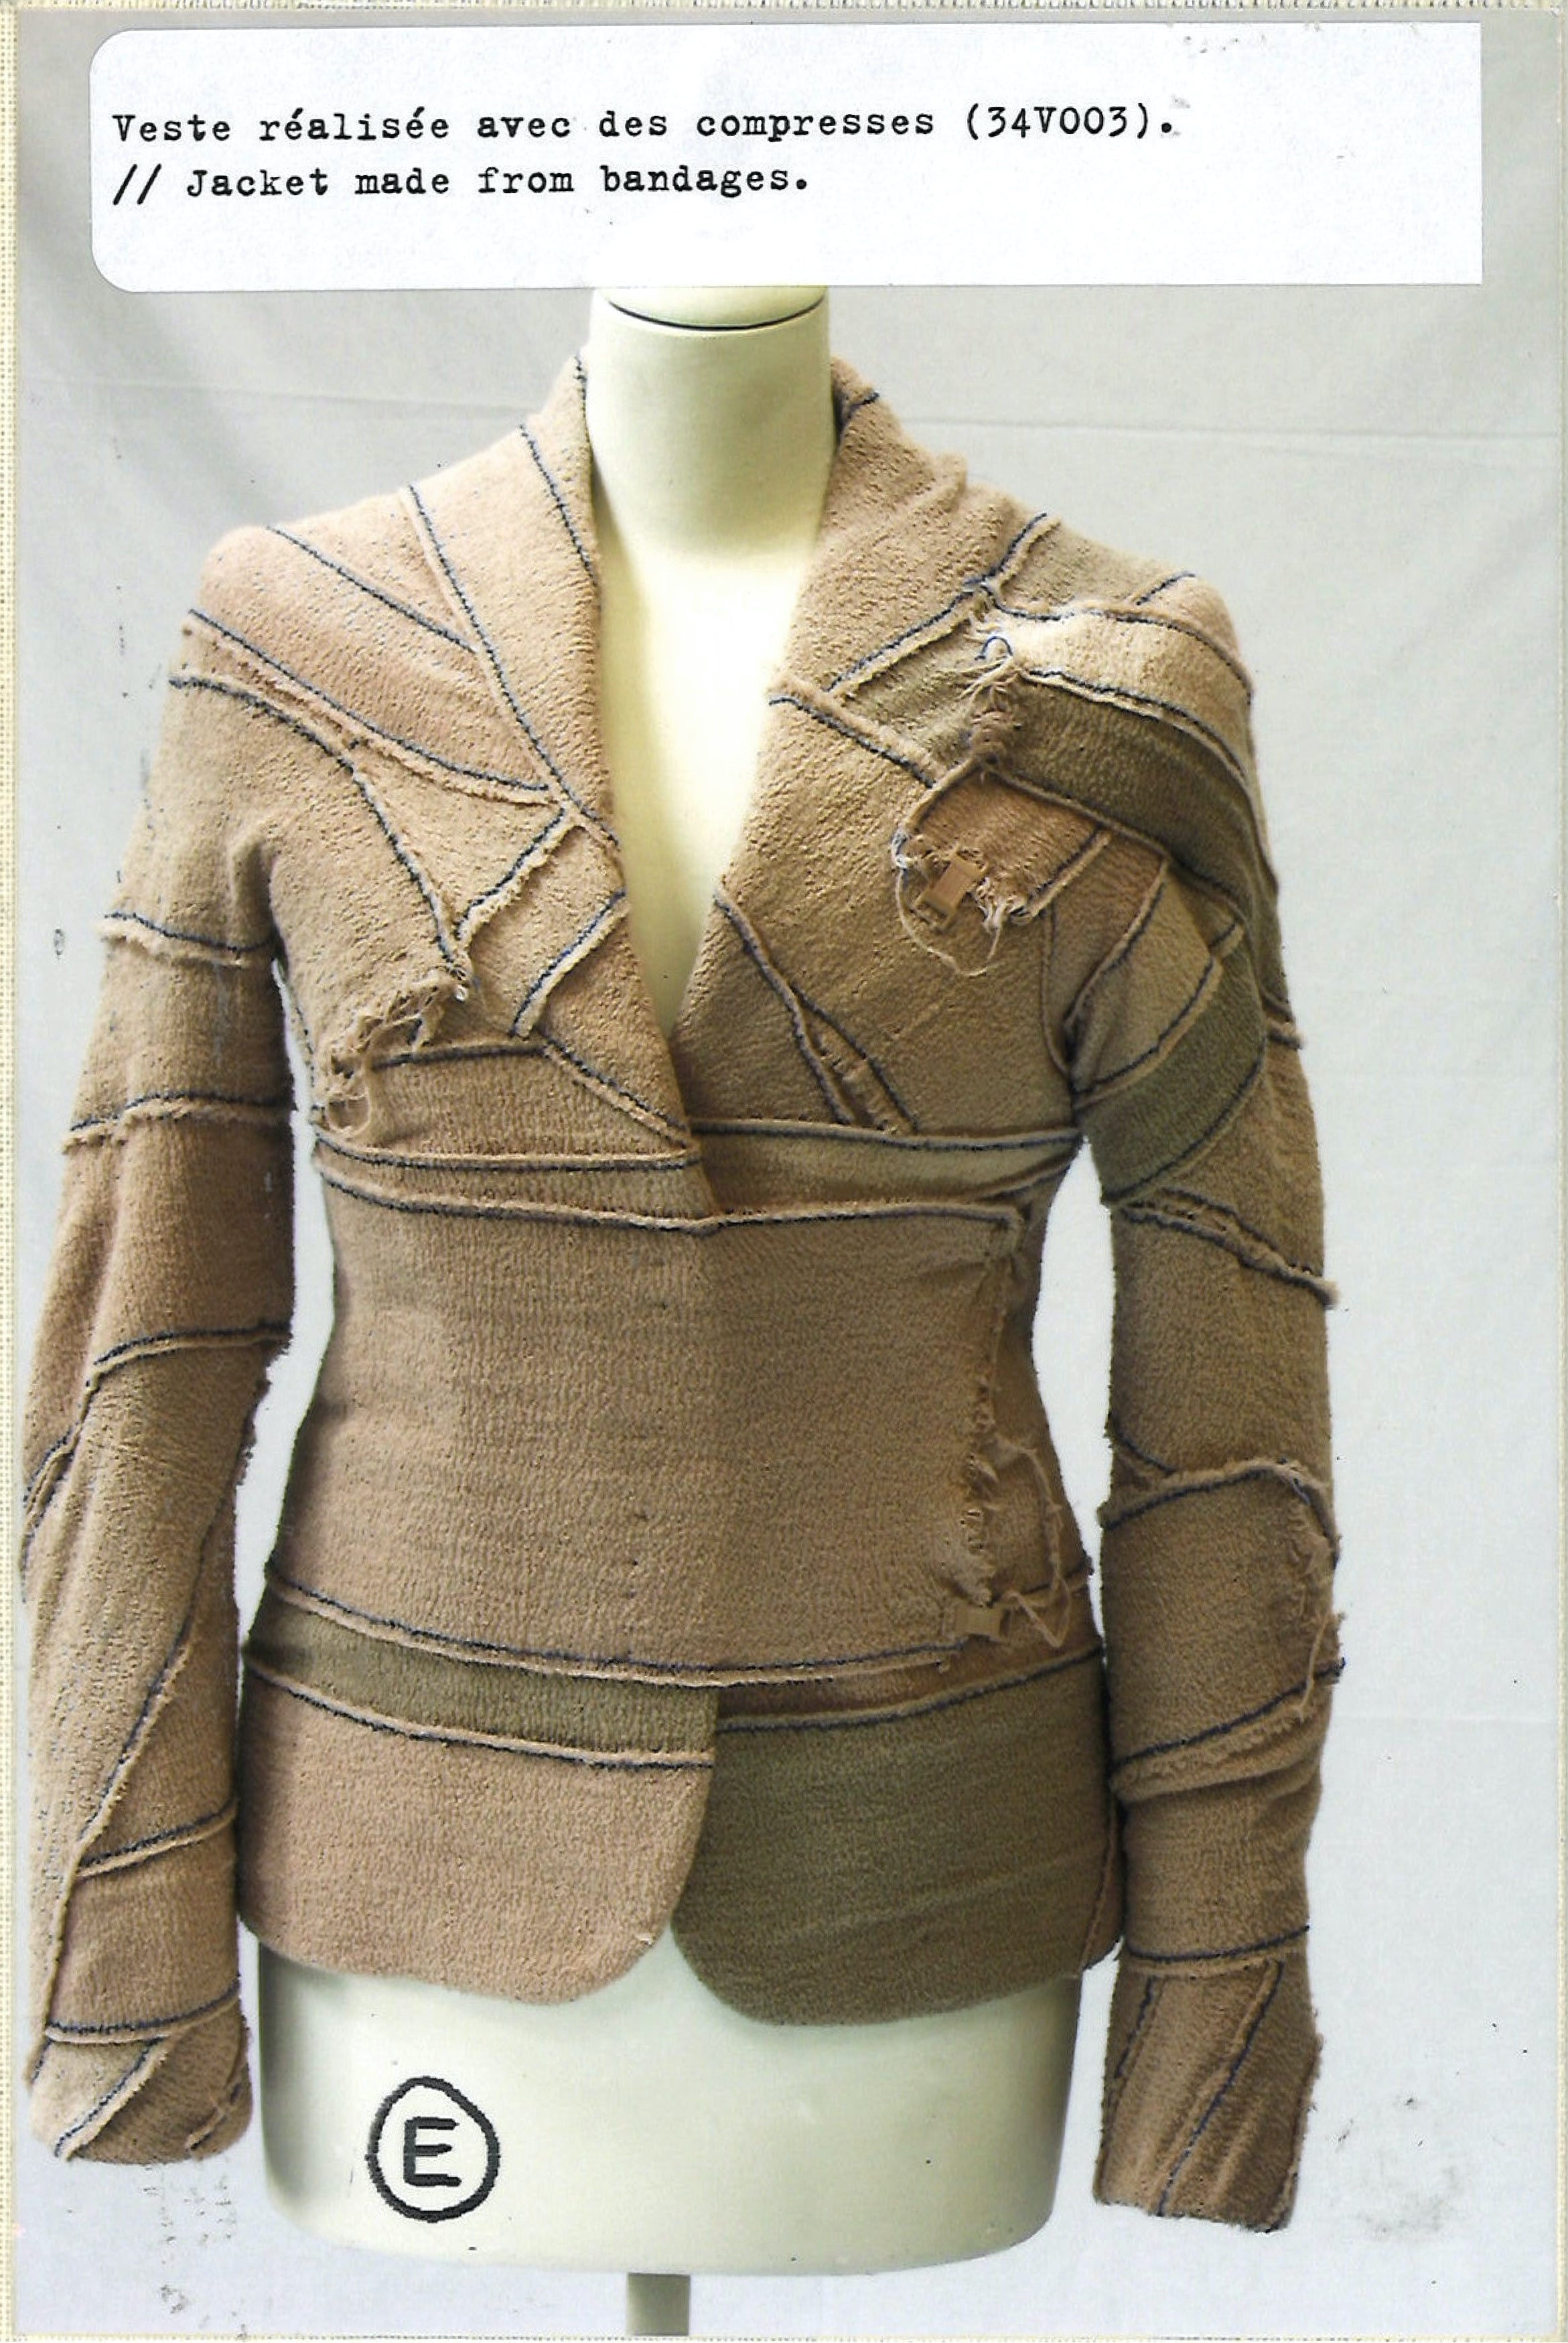 Maison Martin Margiela Lookbook
Womenswear Artisanal Collection Autumn/Winter 2005-06